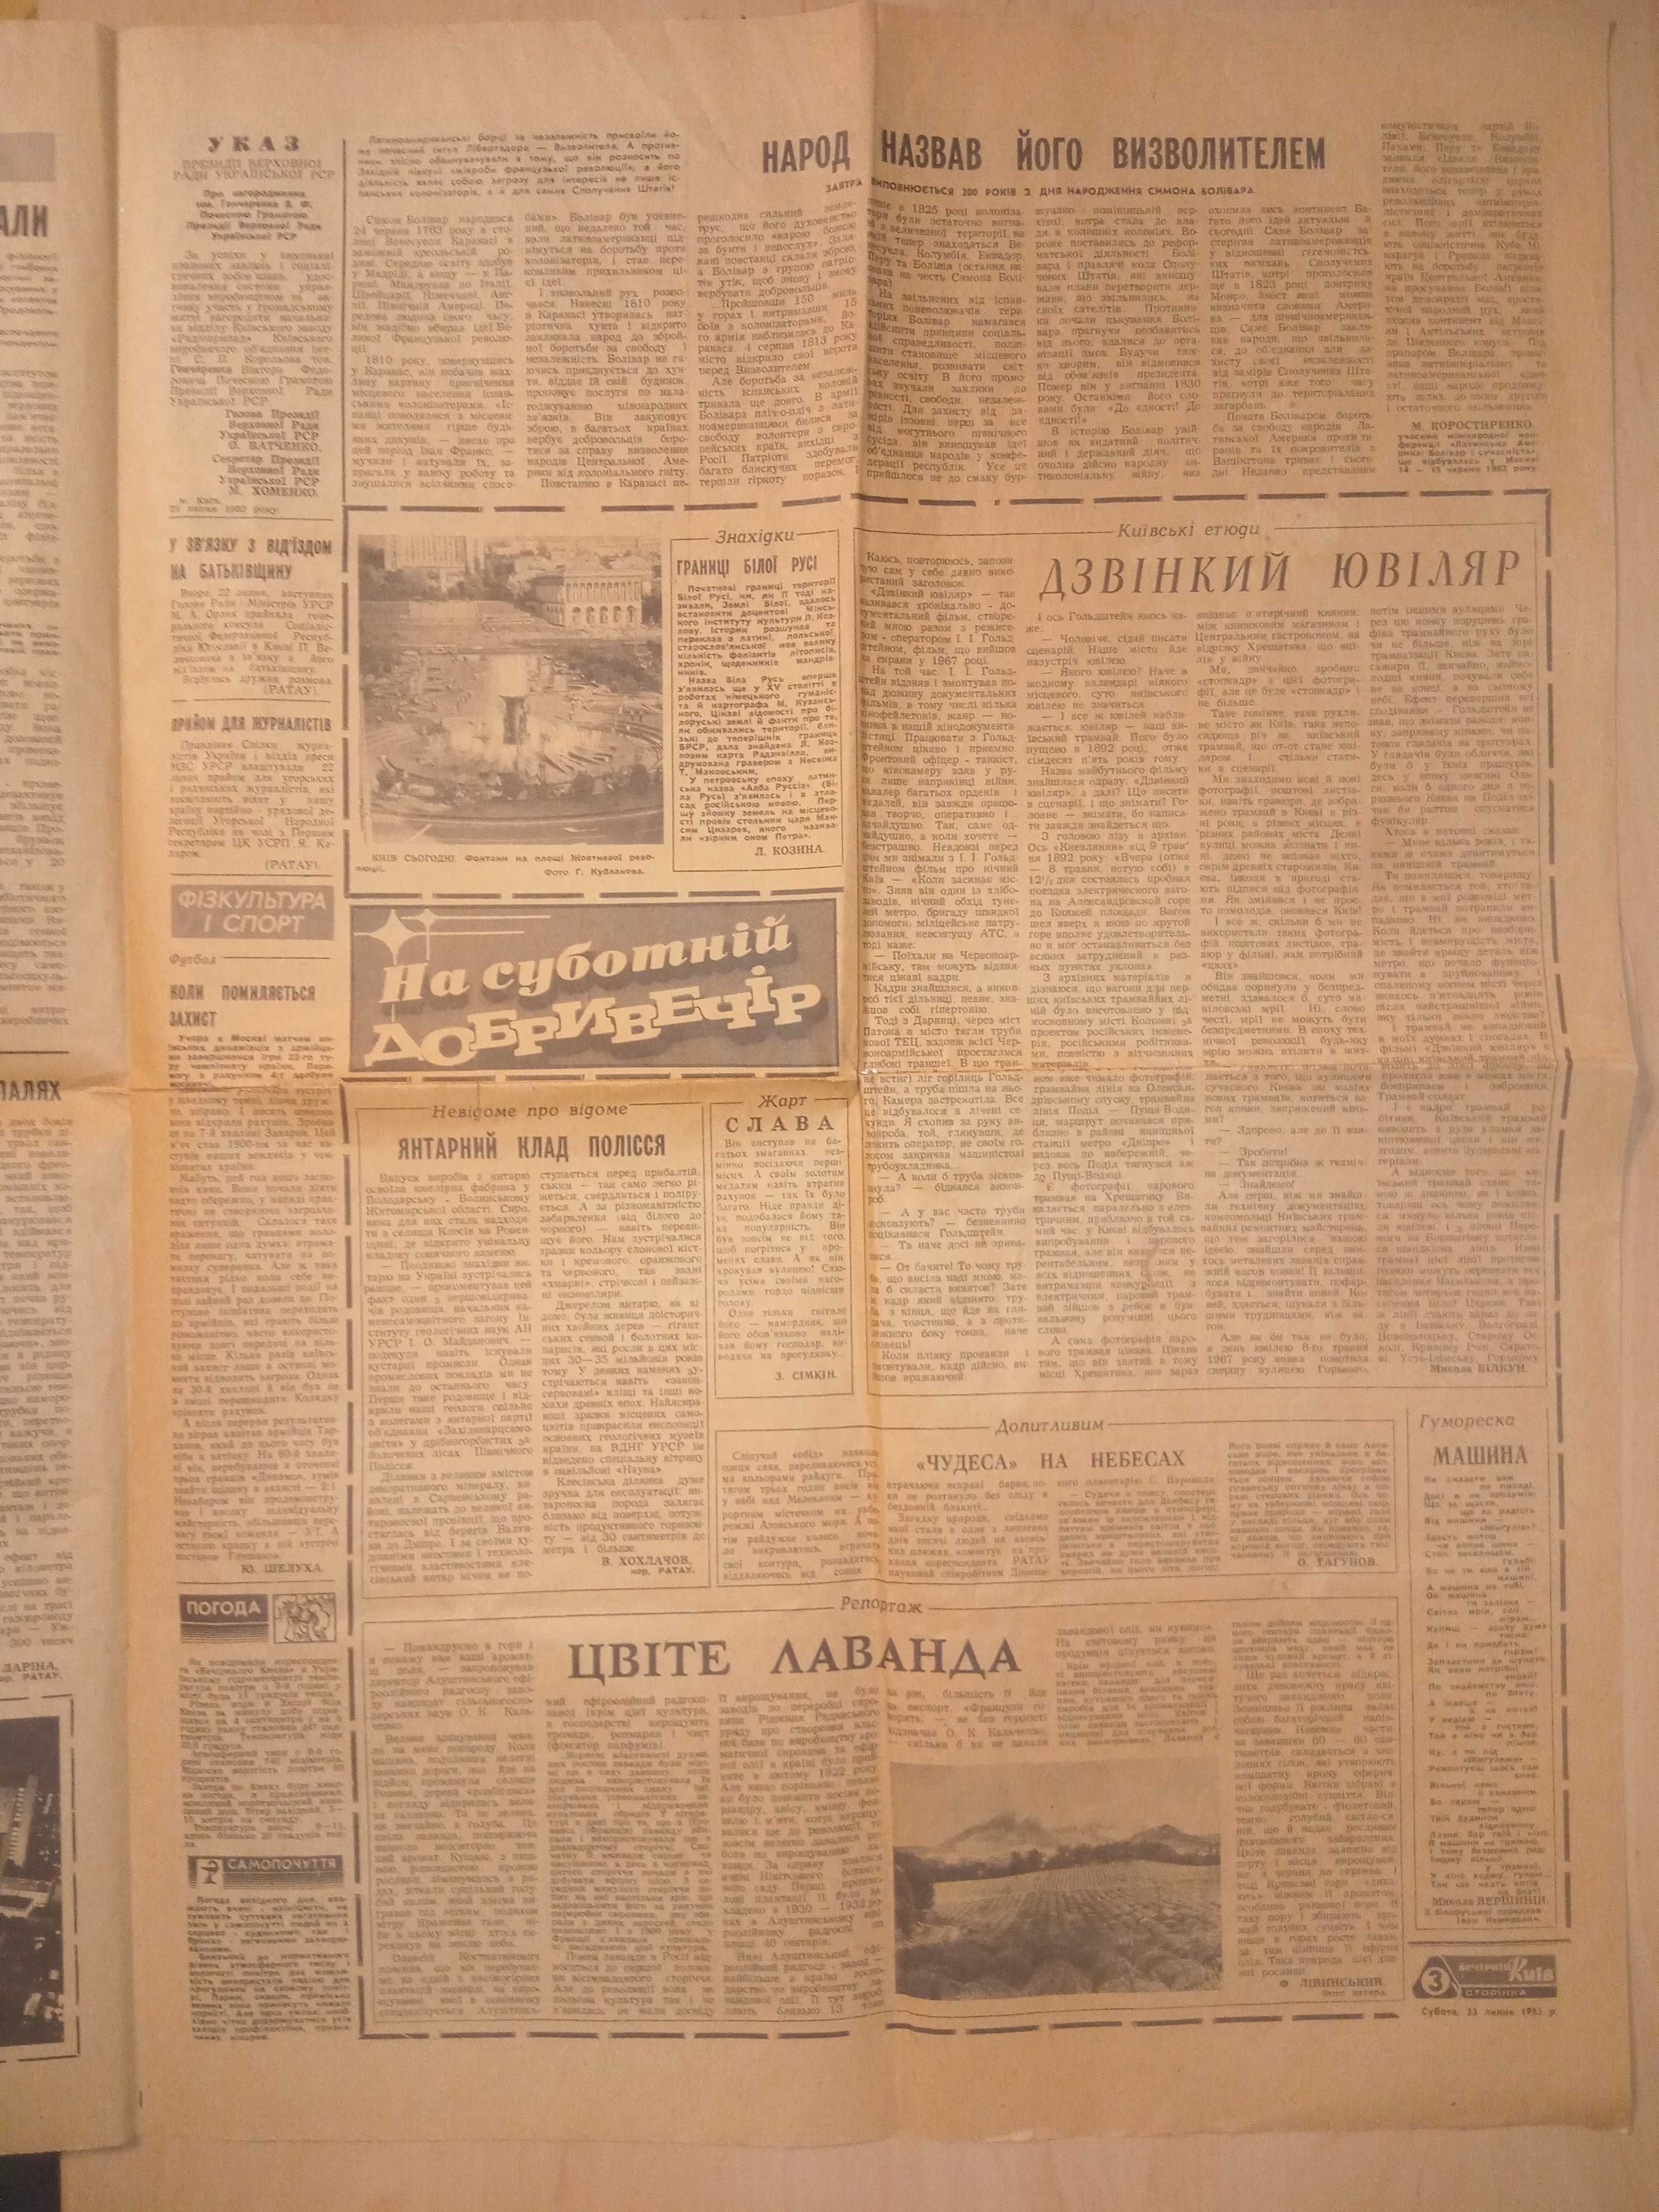 "Вечірній Київ" від 23 липня 1983 року - стара газета (для колекції)